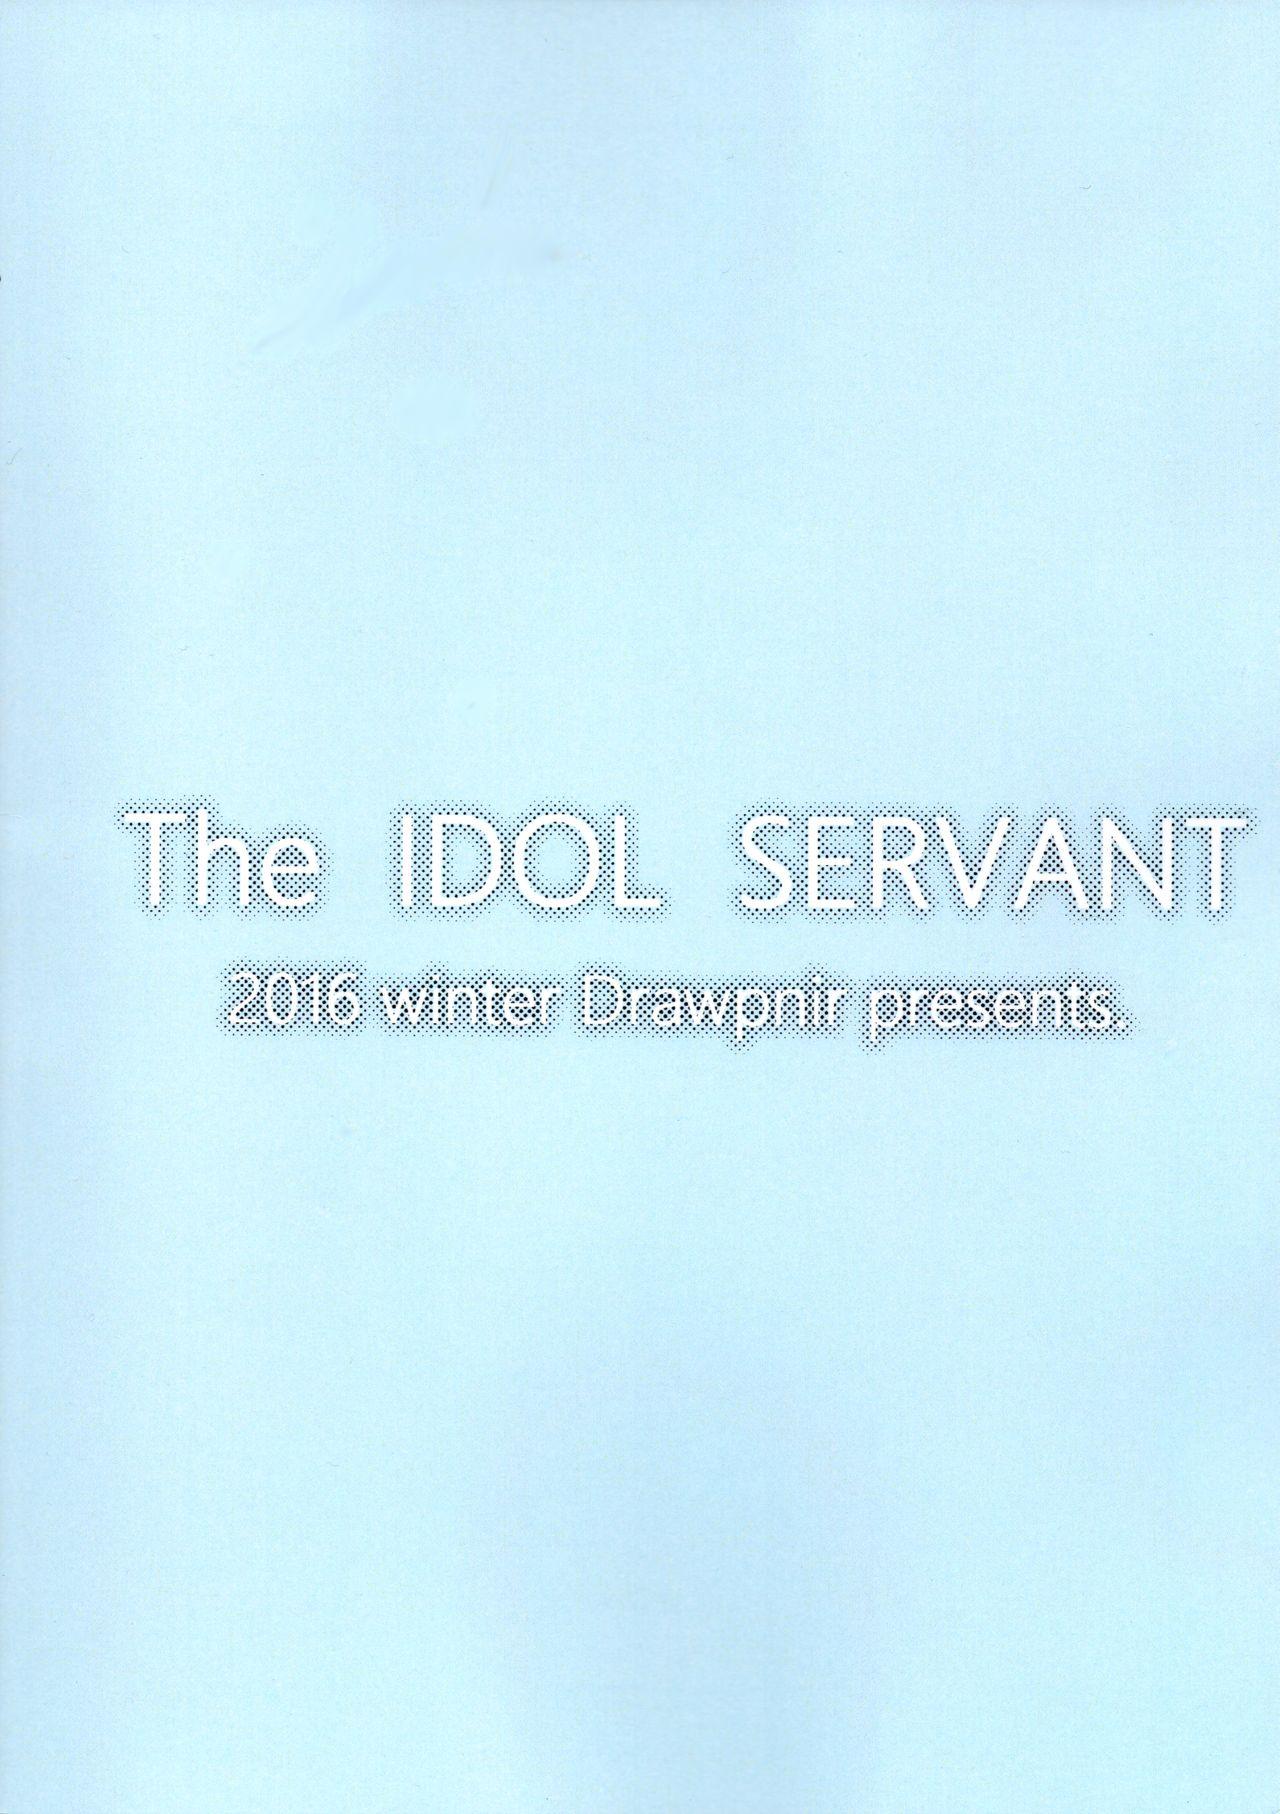 The IDOL SERVANT 24